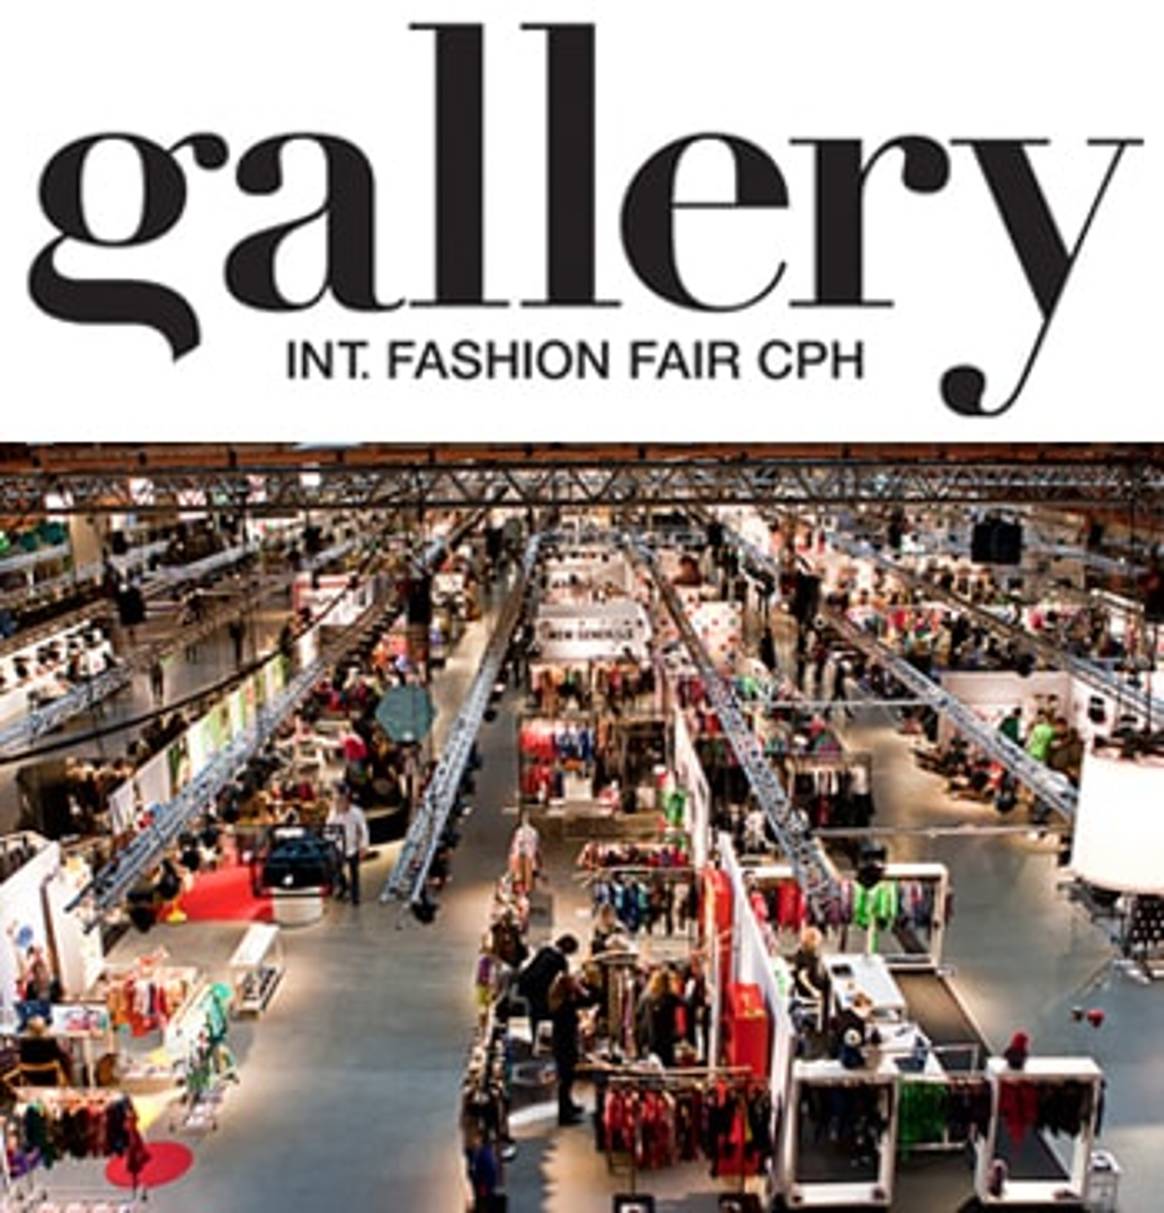 Gallery Int. Fashion Fair Cph